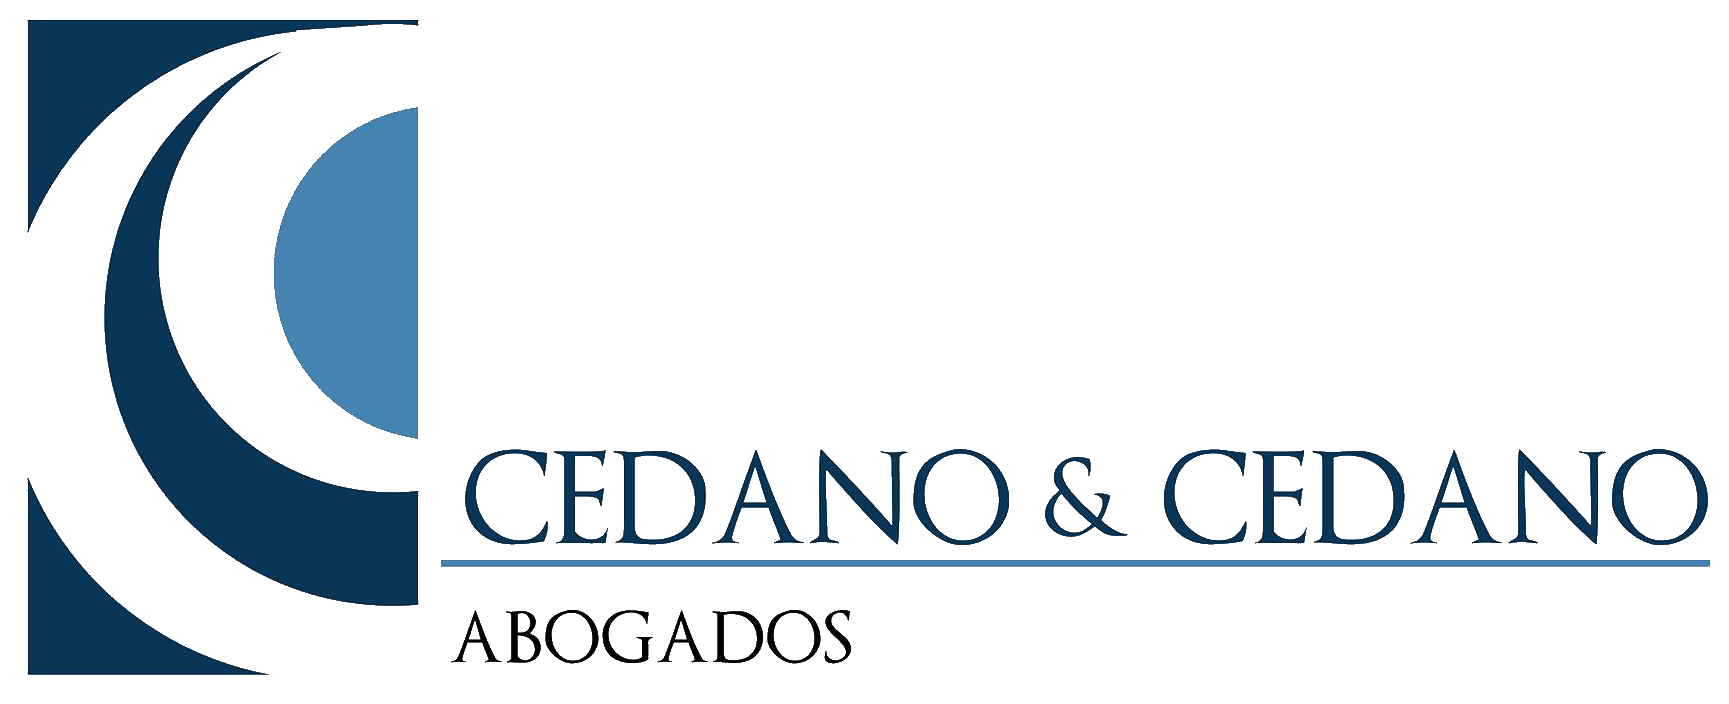 Cedano & Cedano Abogados